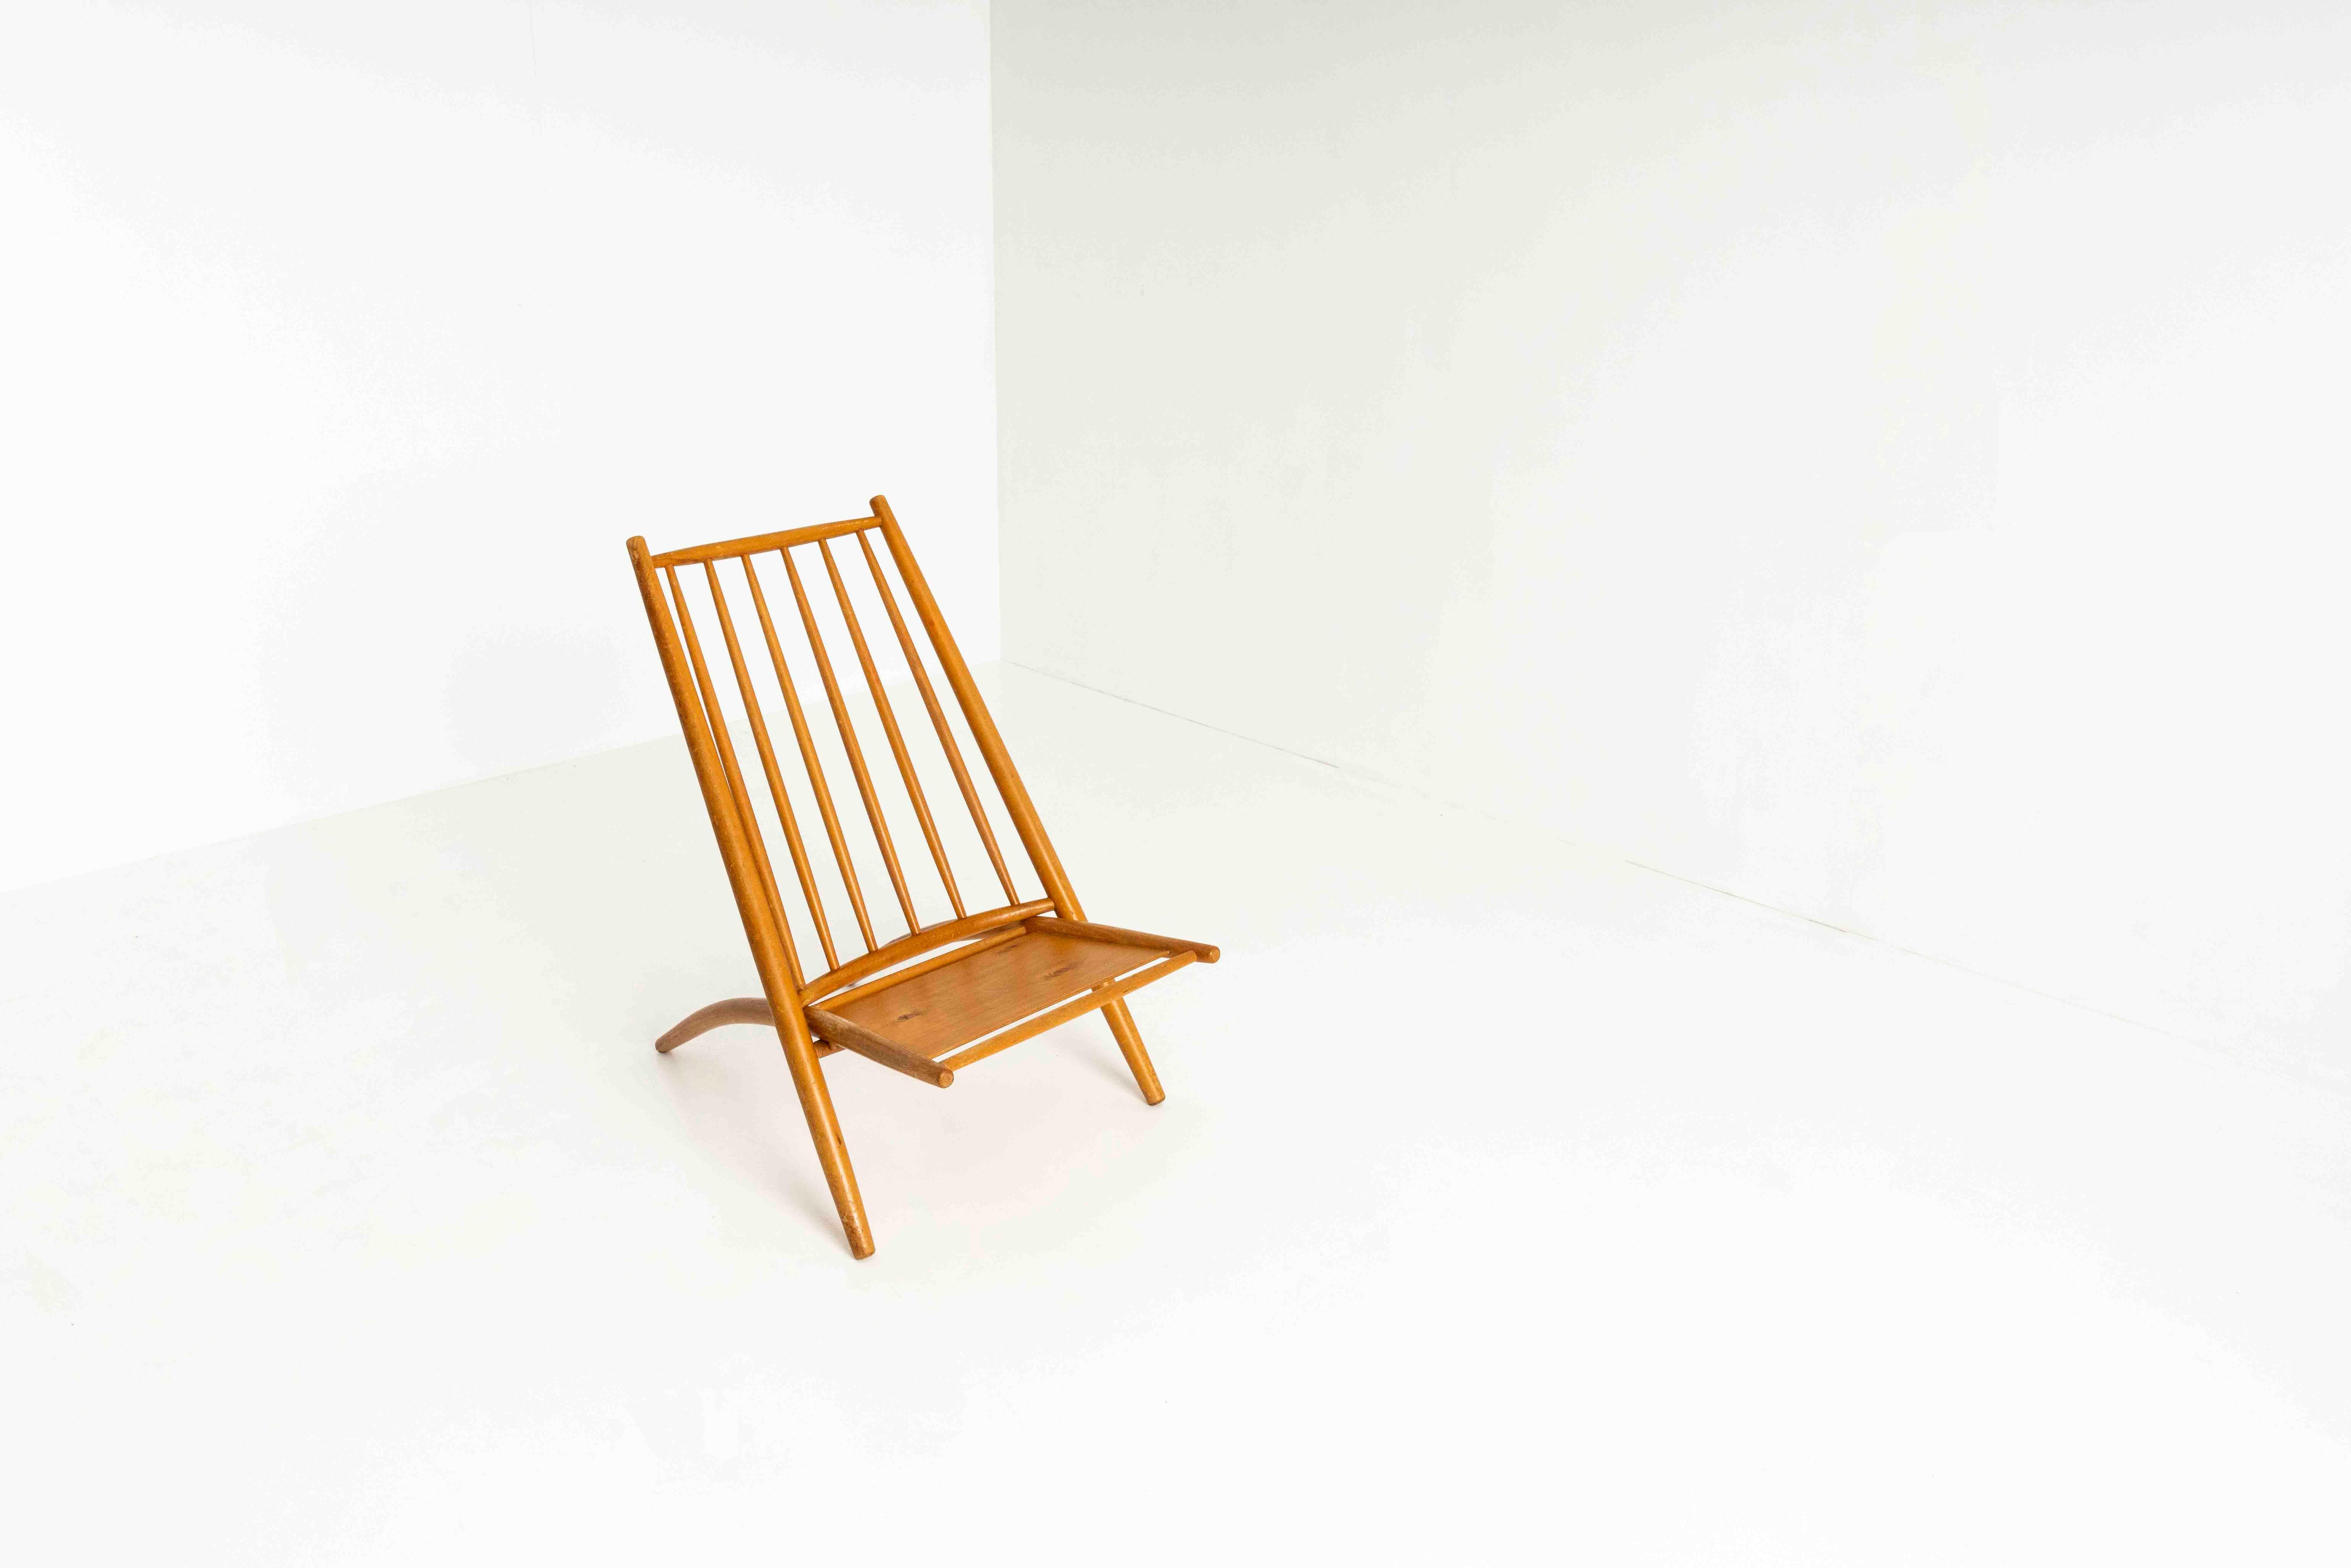 Schöner Stuhl Congo aus Birke von Ilmari Tapiovaara für Asko 1960er Jahre. Diese clevere Konstruktion besteht aus zwei Teilen, die ohne Schrauben zusammengefügt werden und sich leicht transportieren oder lagern lassen. Das Design ist inspiriert von